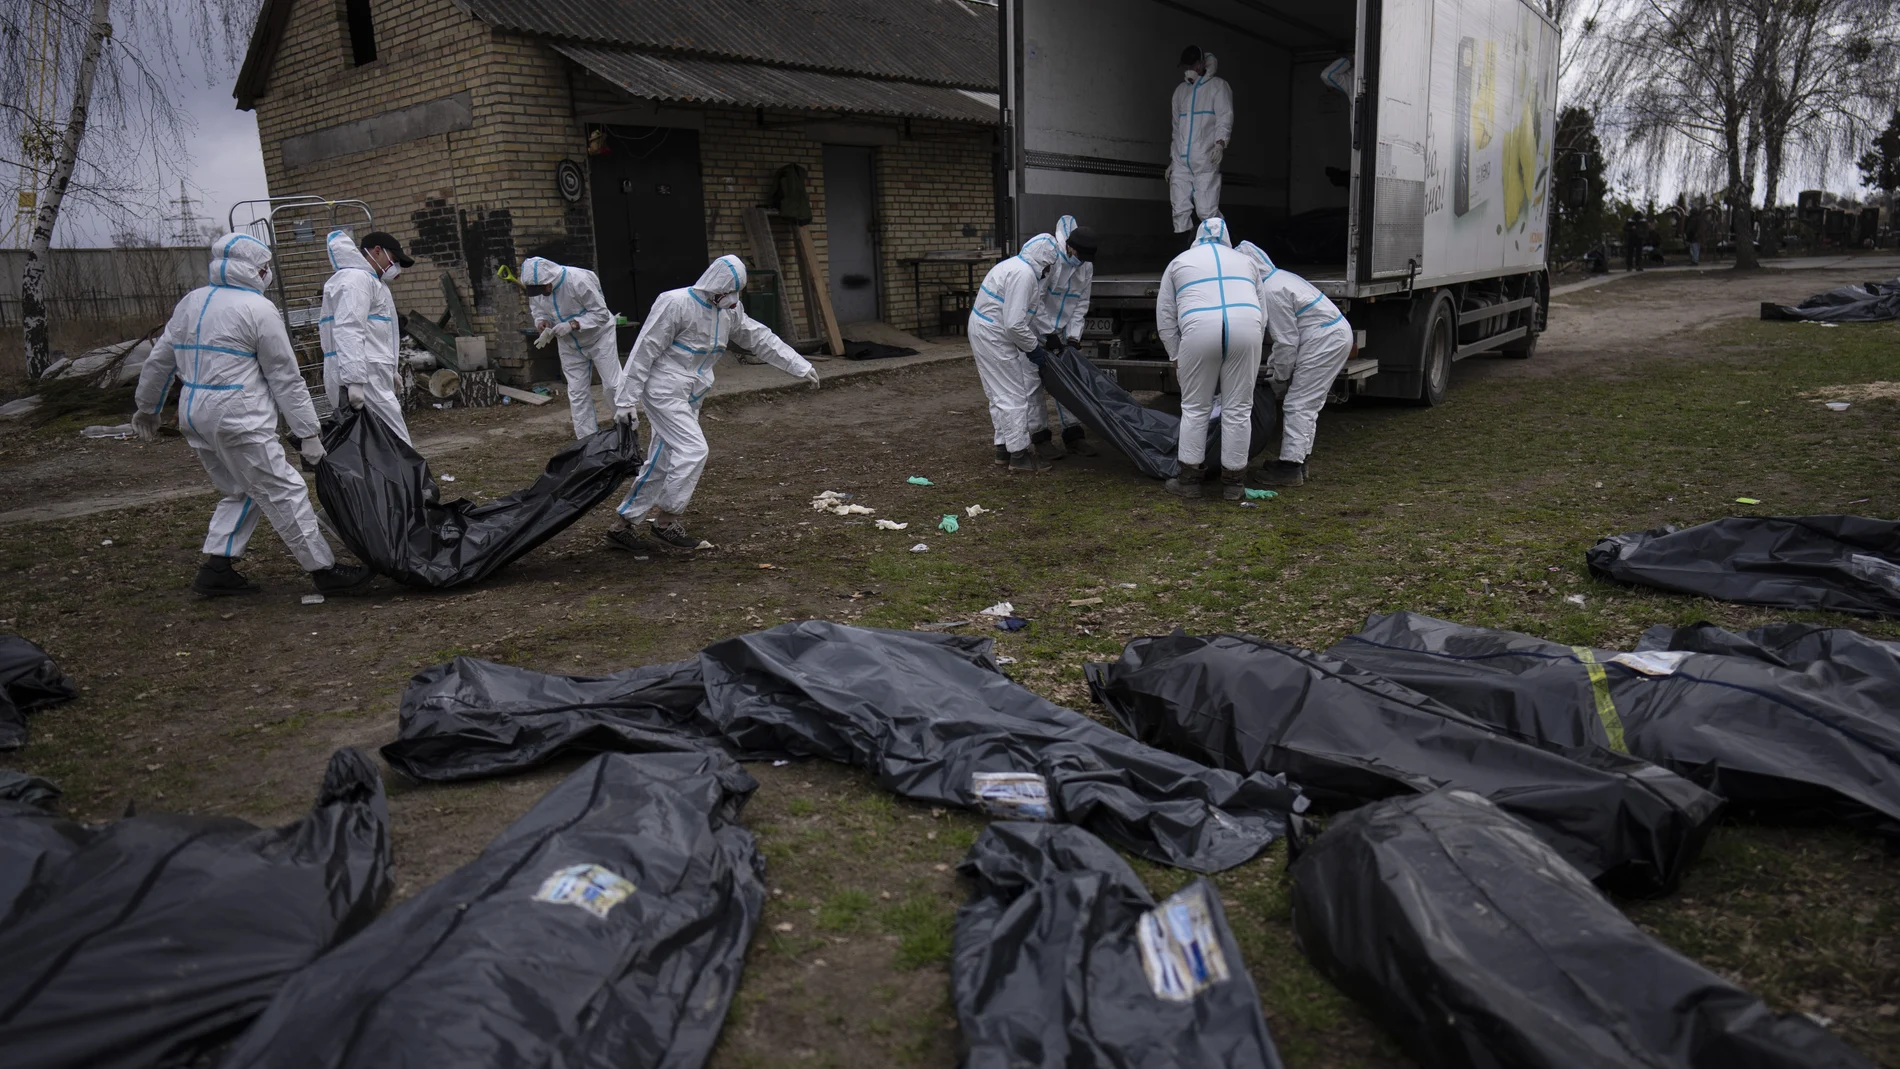 Voluntarios trasladan a una morgue los cadáveres encontrados en la localidad ucraniana de Bucha. (AP Photo/Rodrigo Abd)